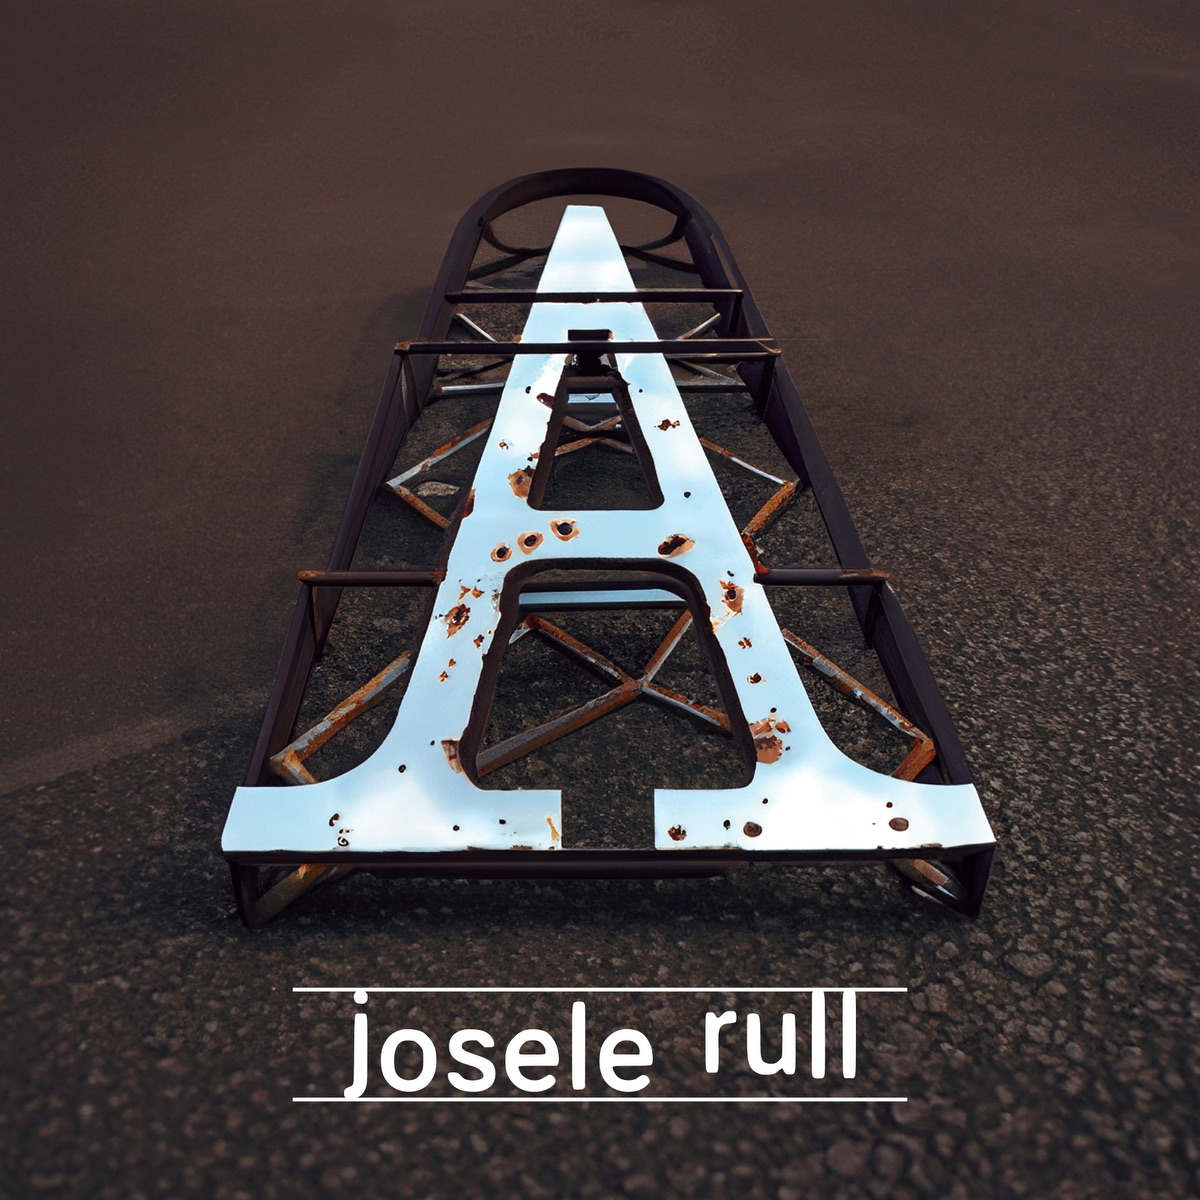 El músico malagueño Josele Rull presenta el lanzamiento de su nuevo y segundo disco, que lleva por título sencillamente 'A'.